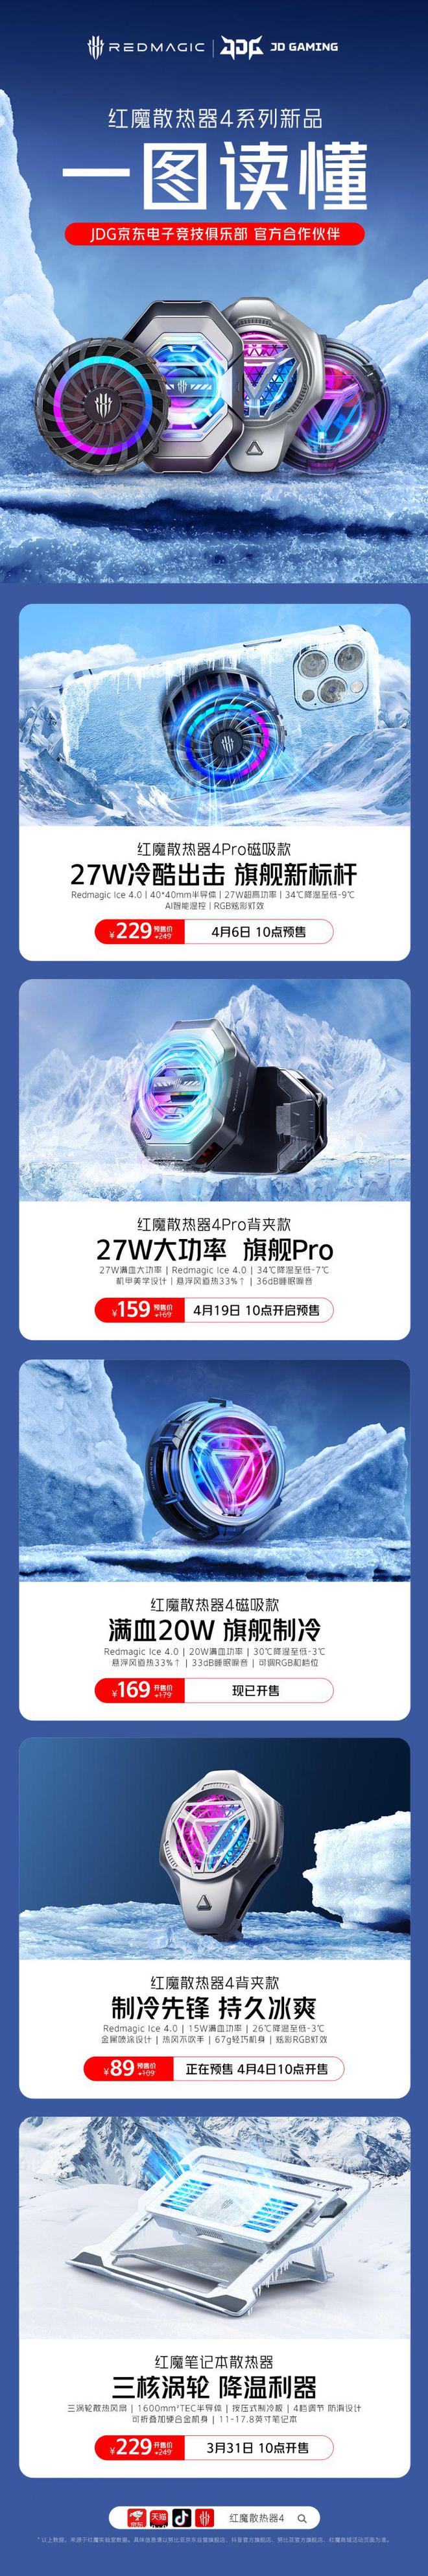 南宫28NG娱乐最新官网一图读懂：红魔第四代全系列散热器新品